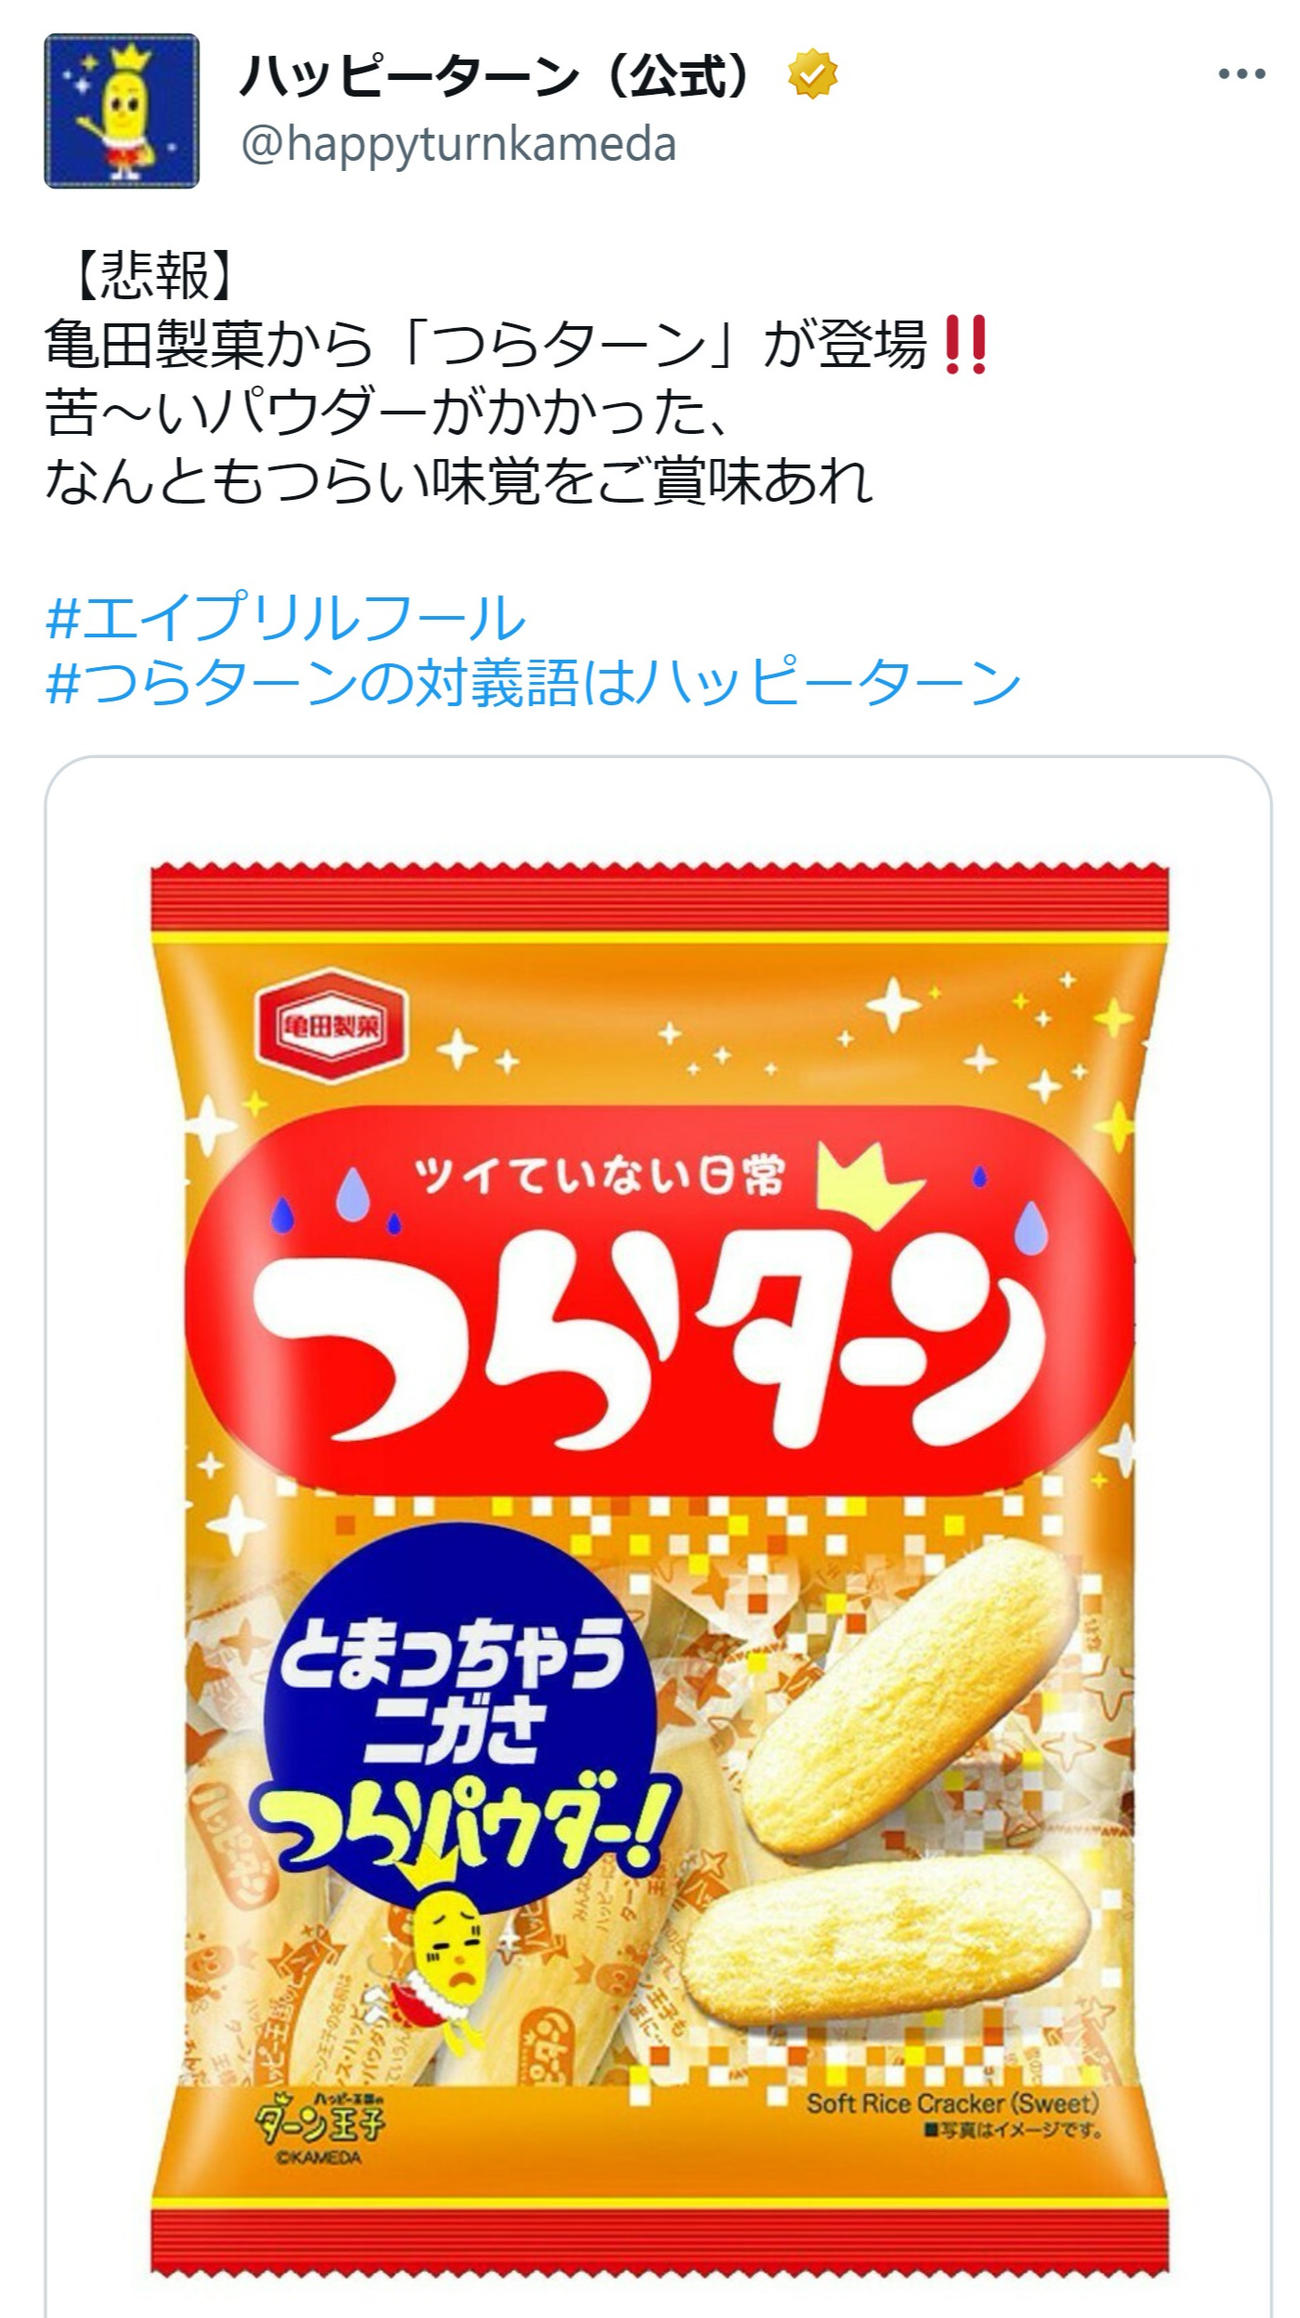 亀田製菓の公式ツイッターから